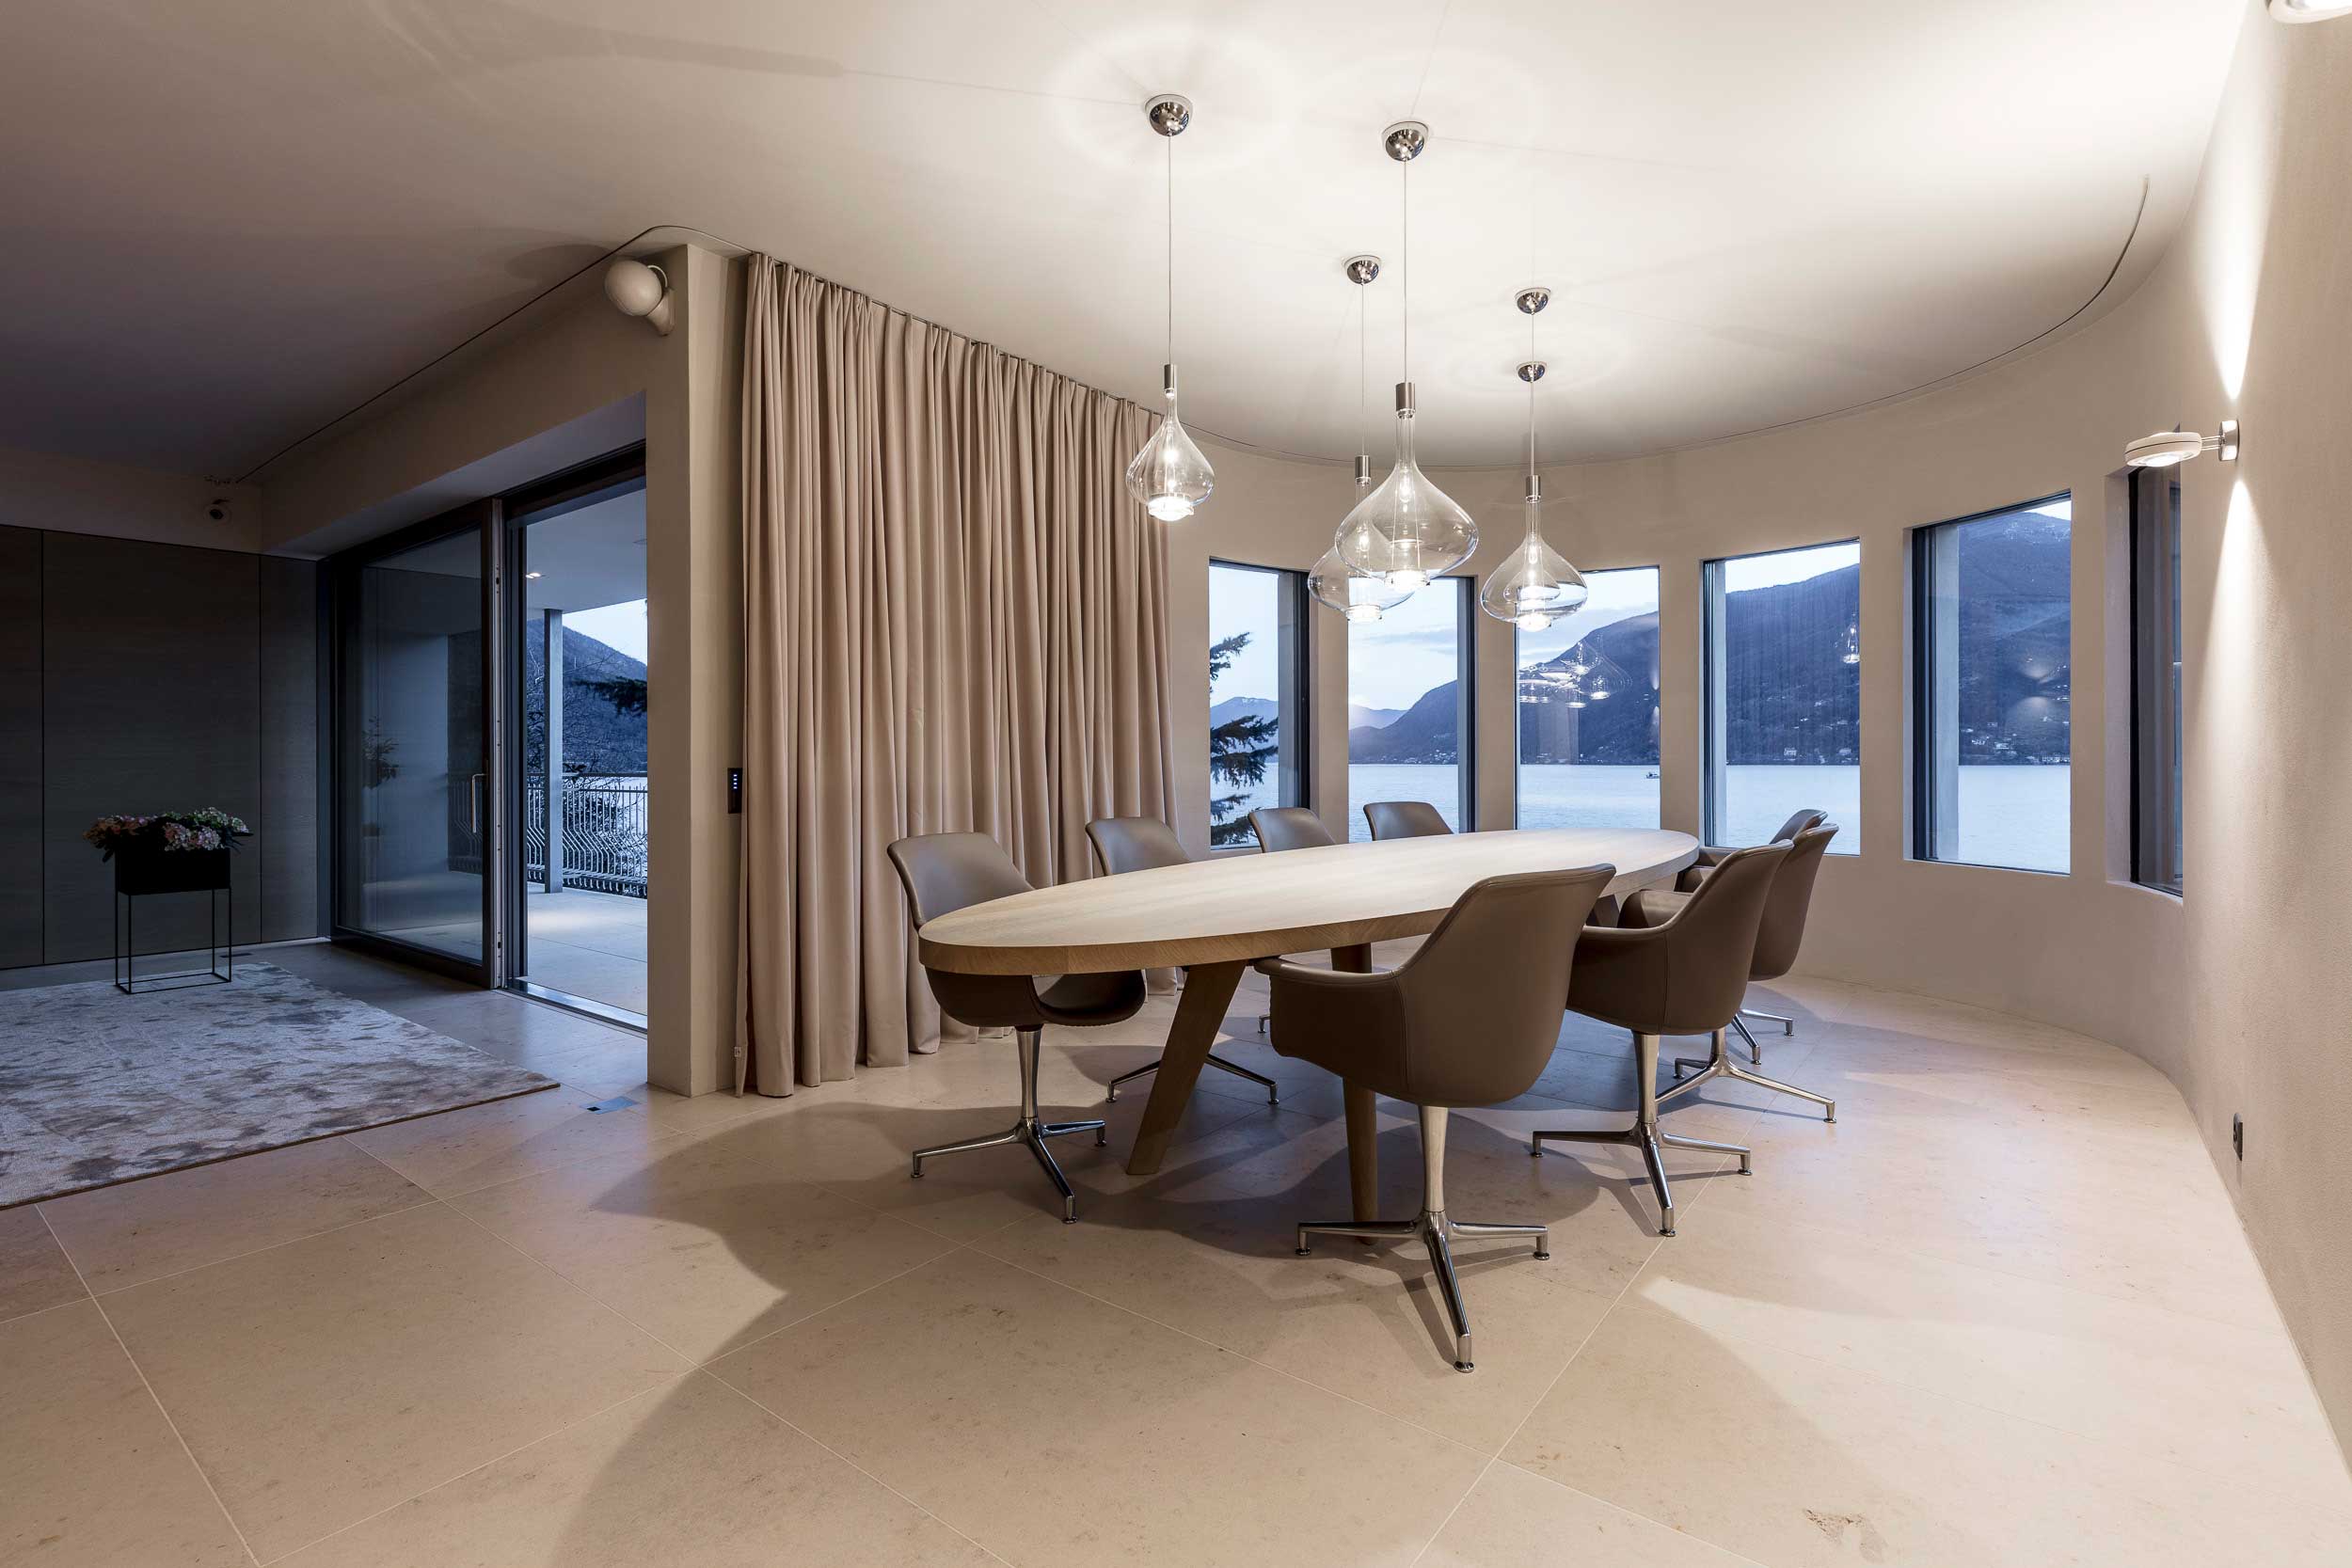 Schönes Wohnzimmer mit ovalem Tisch in der Mitte und schöne Lampen von oben runterhängend